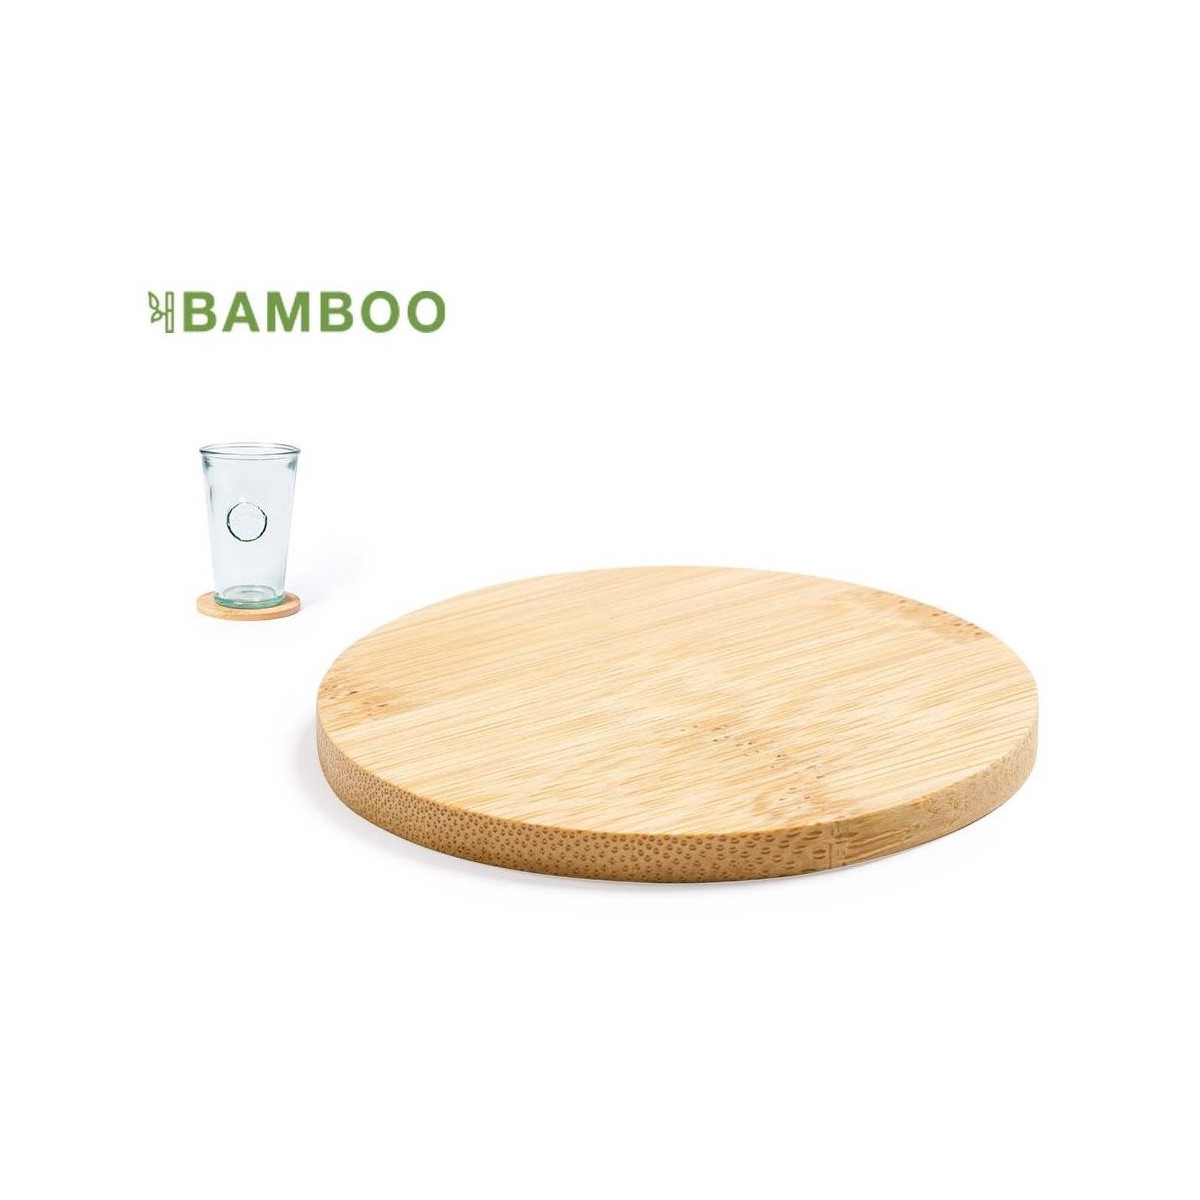 Posavaso redondo fabricado en bambú